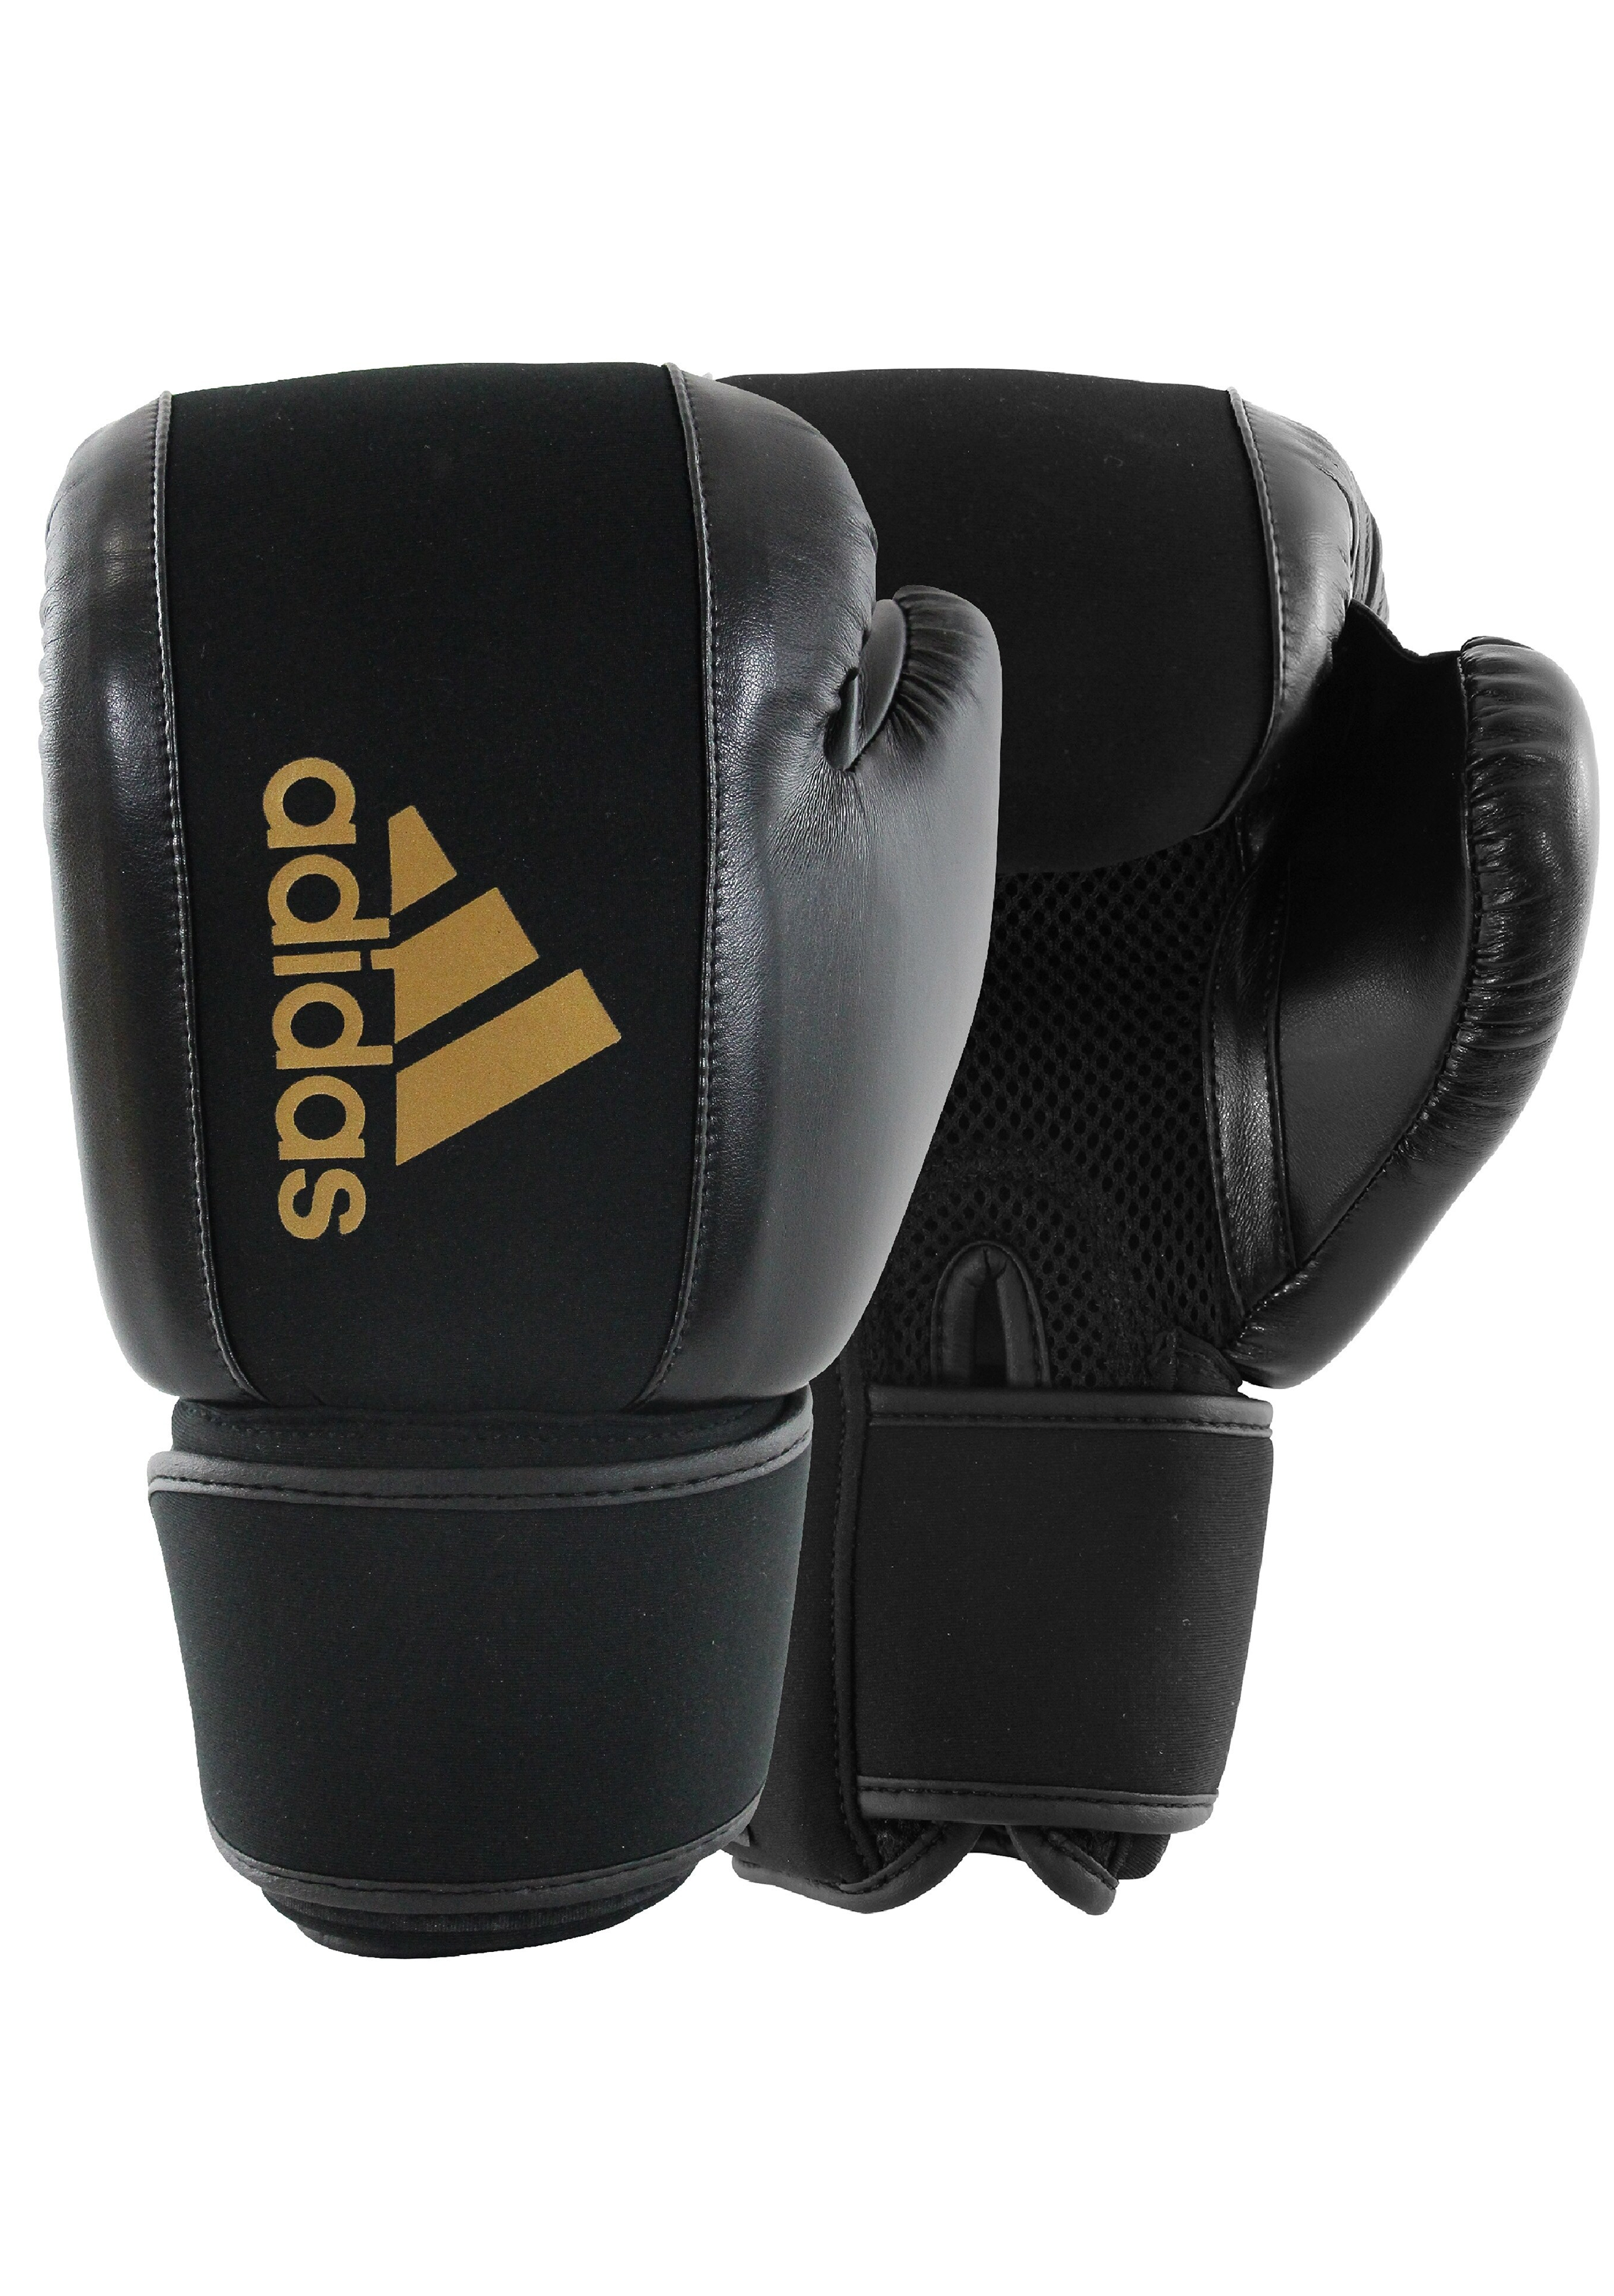 Adidas Unisex Washable Boxing Glove ADIHBWG01 BLACK/GOLD – Jim Kidd Sports